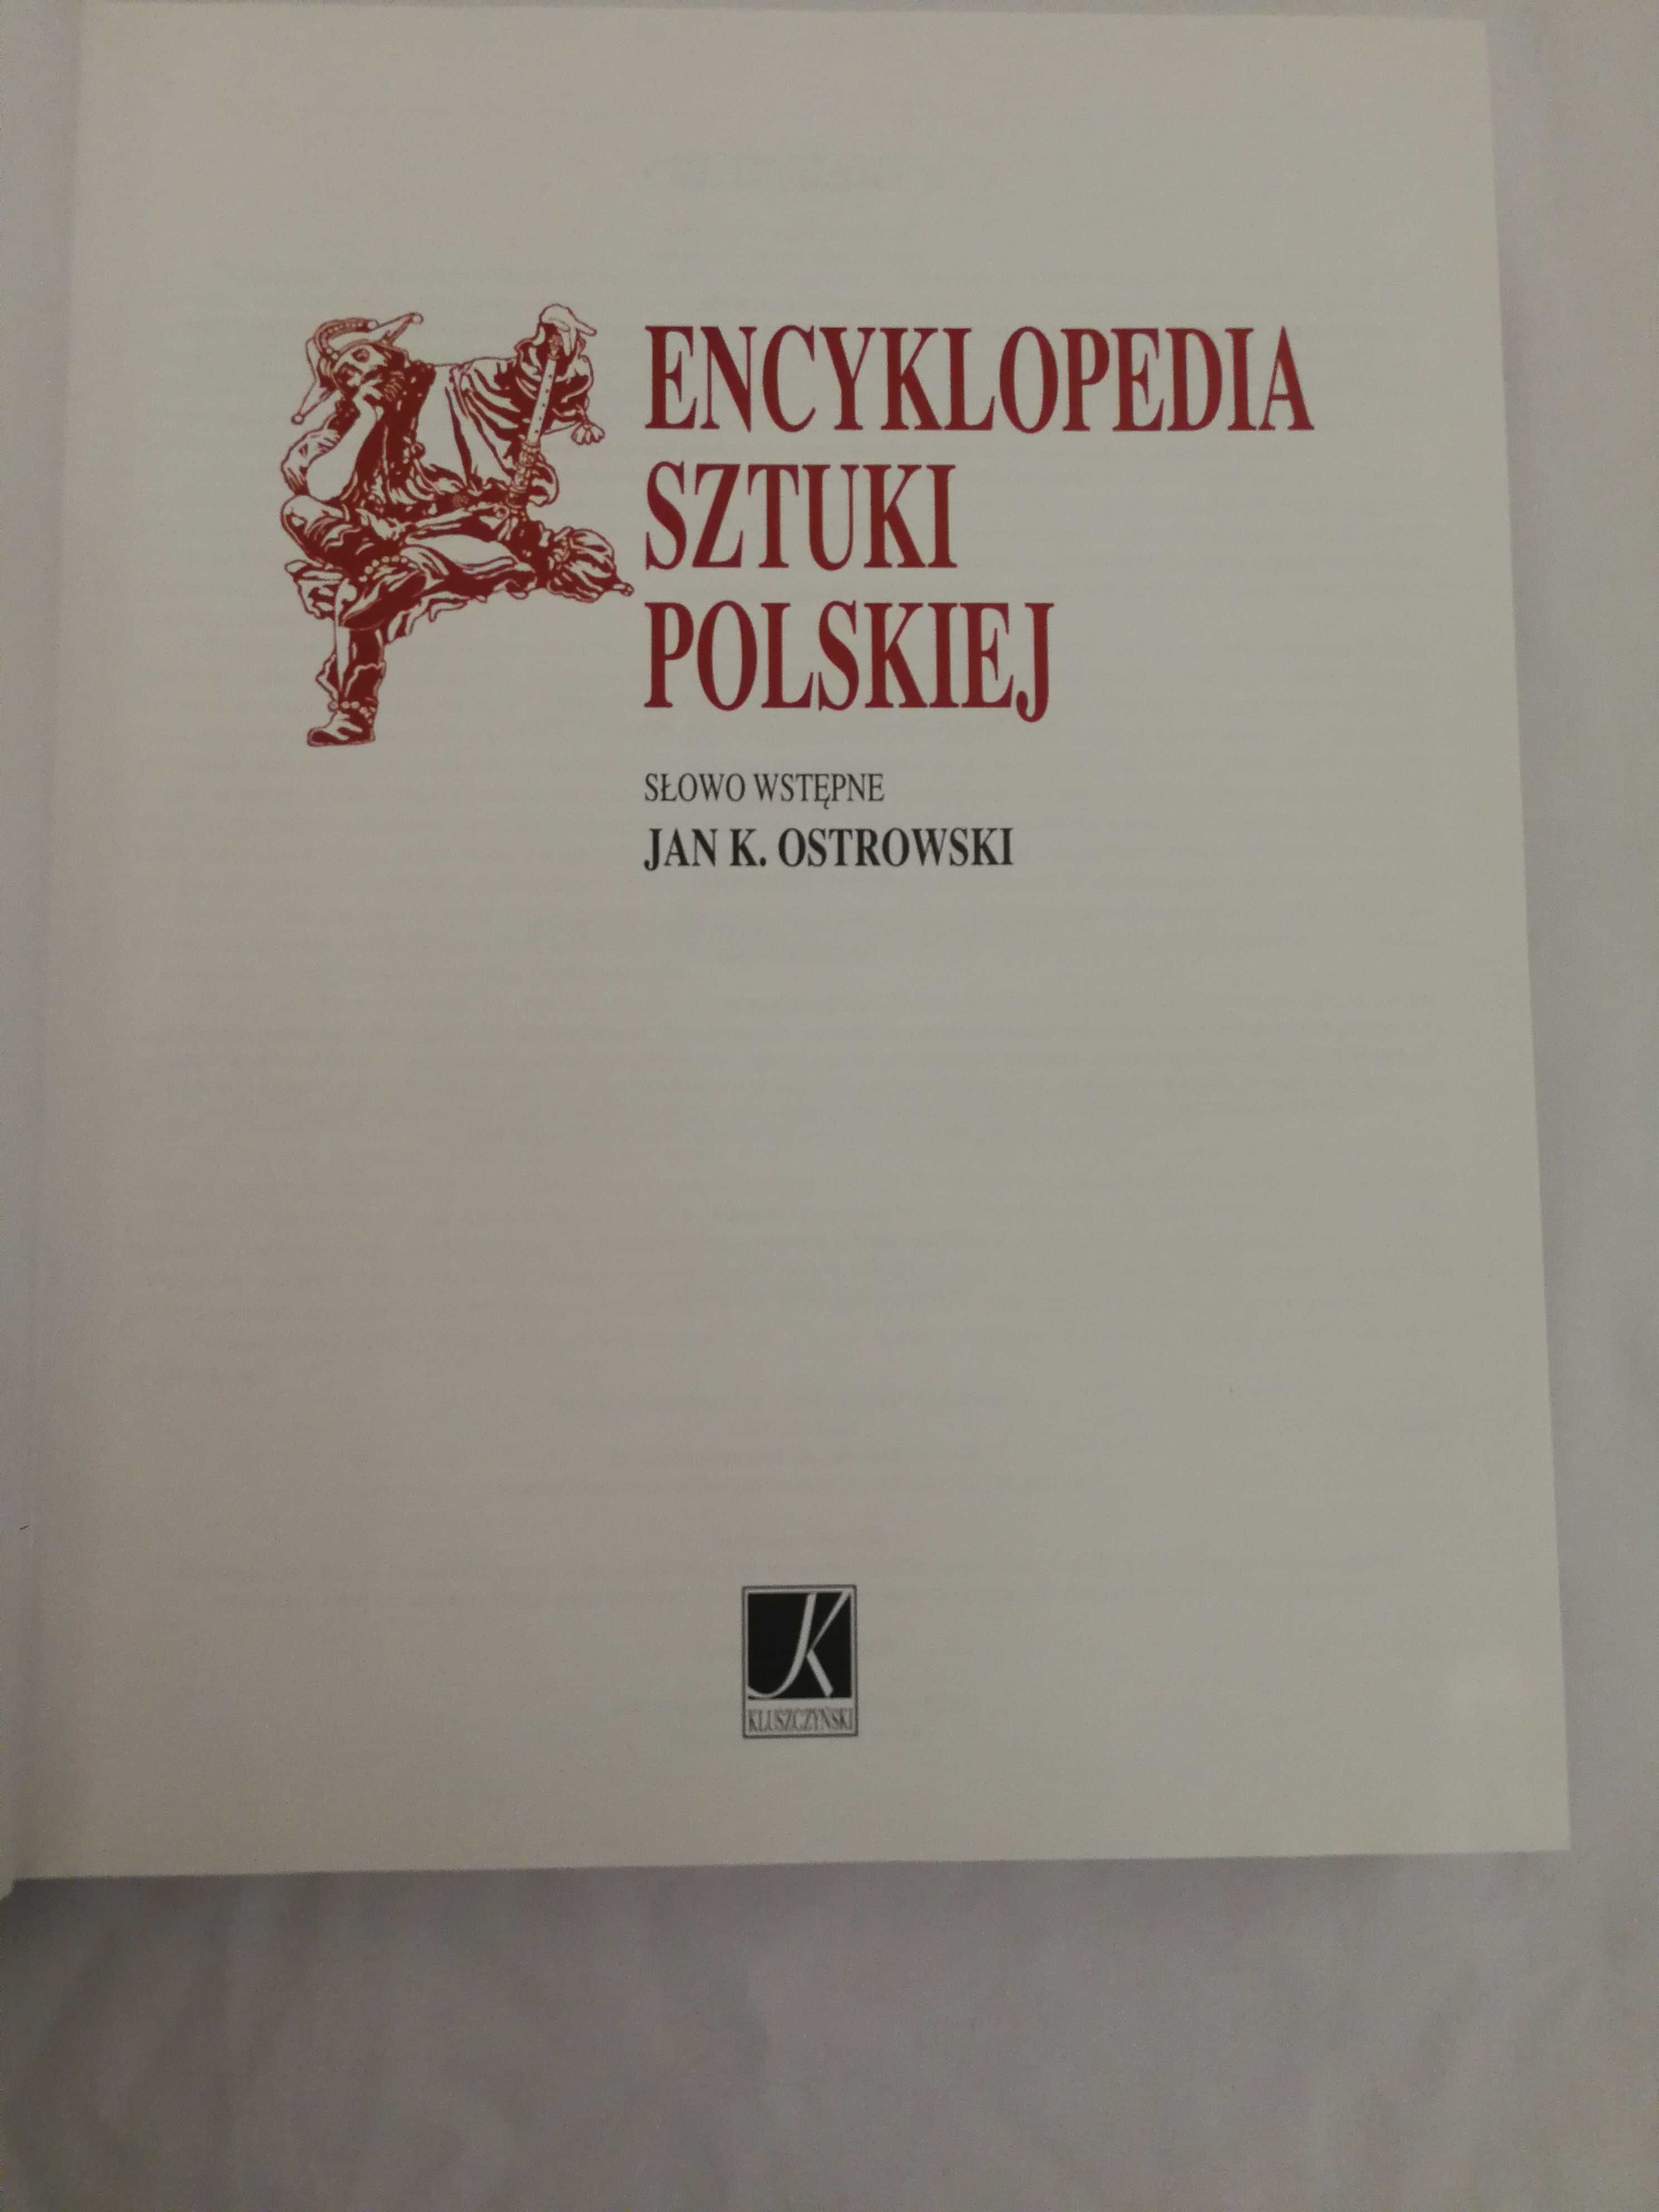 Encyklopedia Sztuki Polskiej.